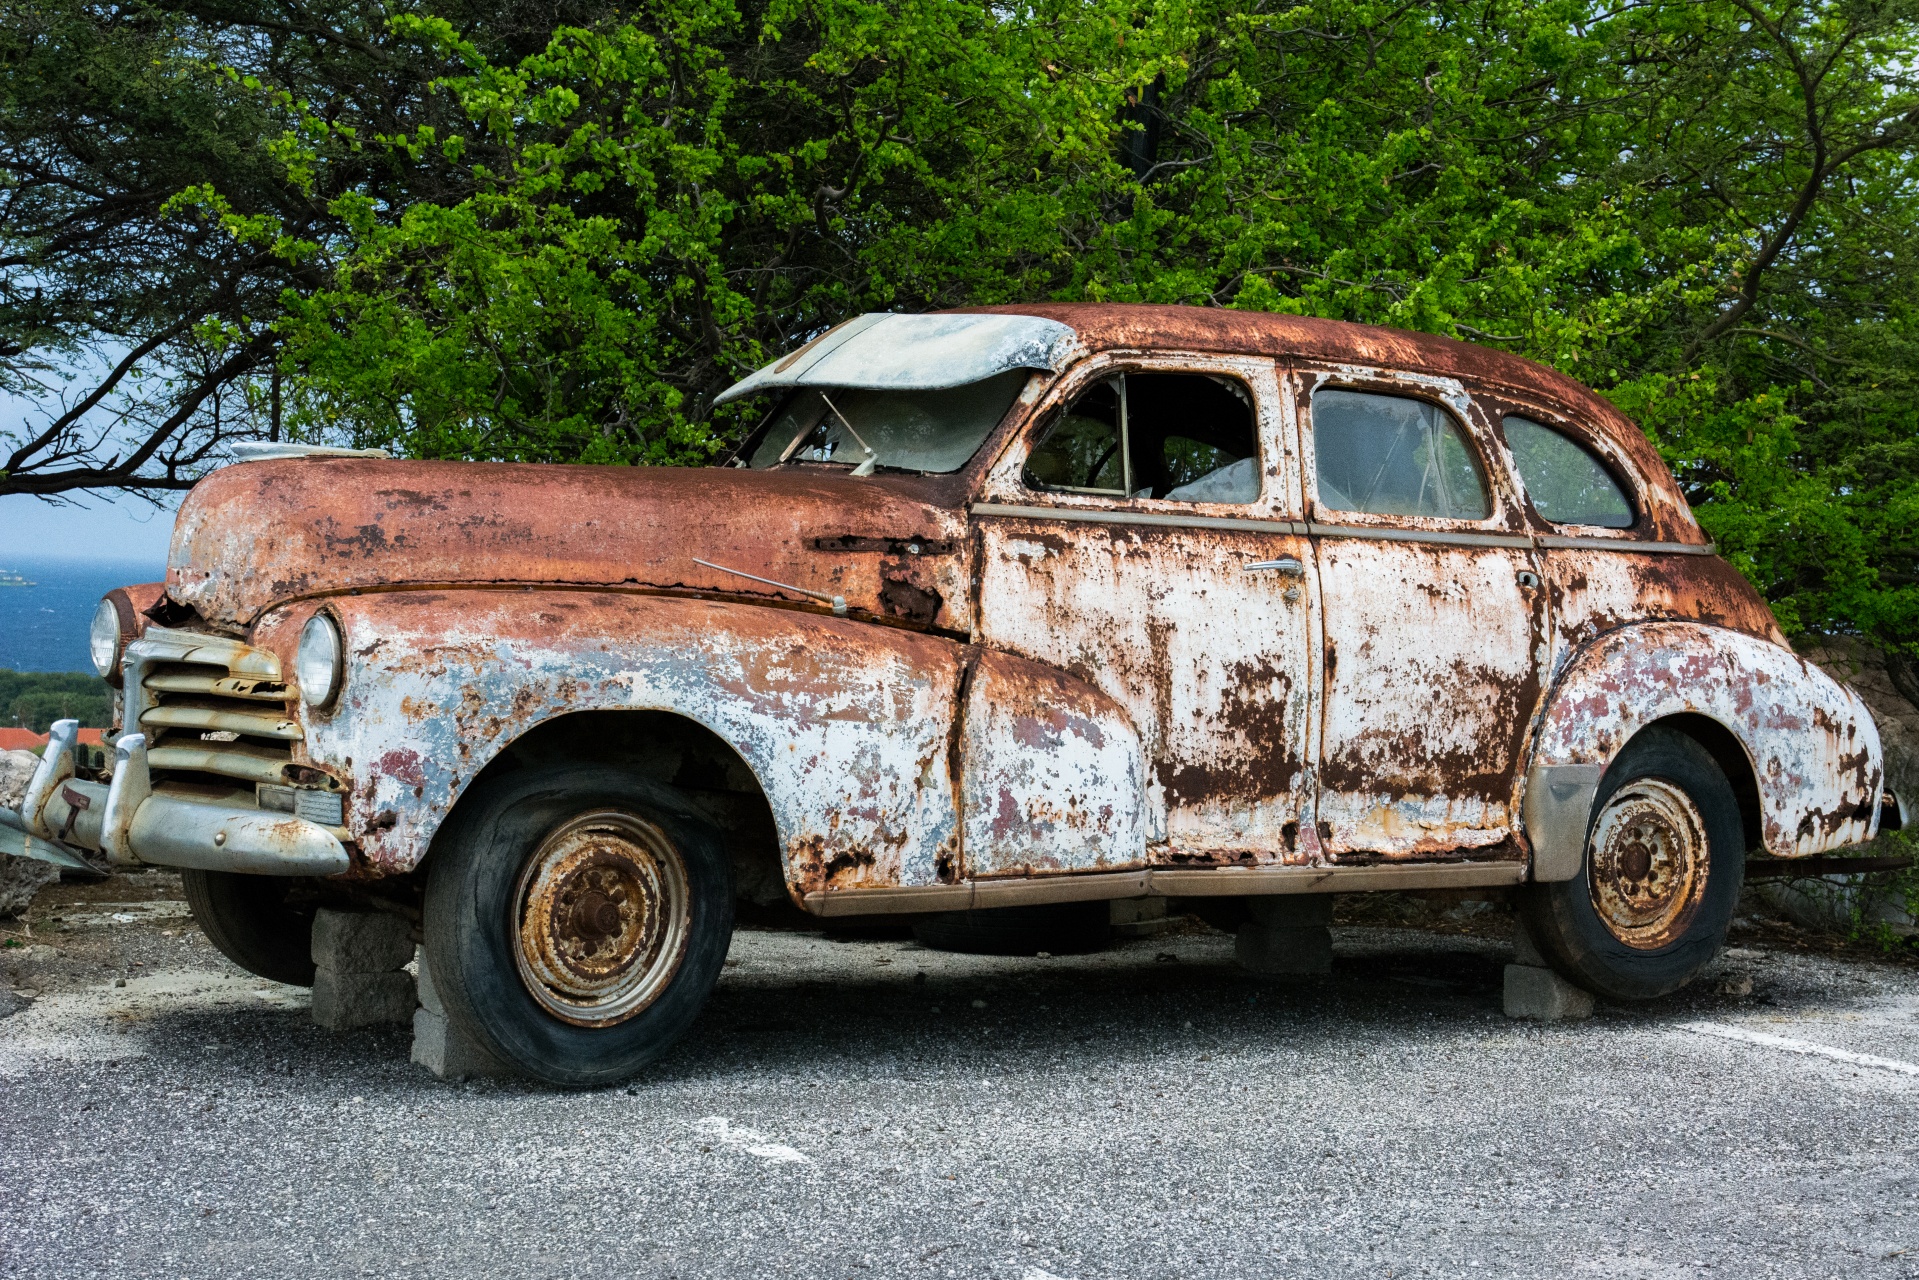 Rusty Vintage Car